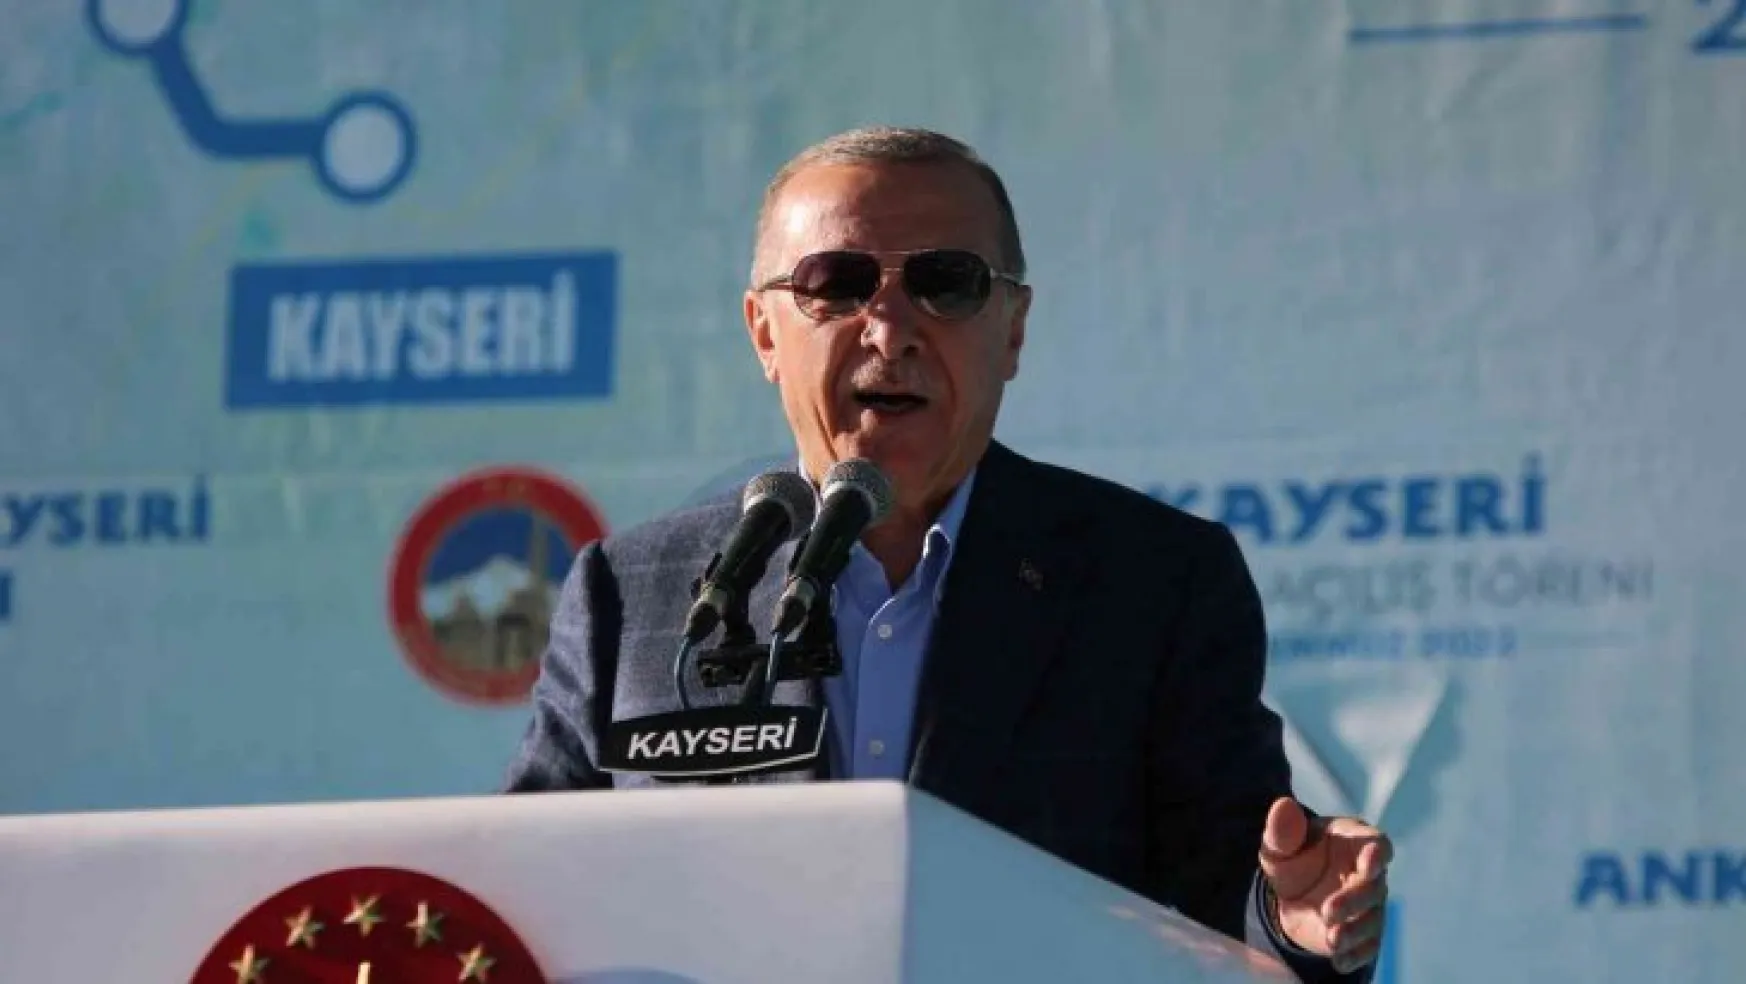 Cumhurbaşkanı Erdoğan: 'Cumhur İttifakı'nın adayı da belli, seçim tarihi de'